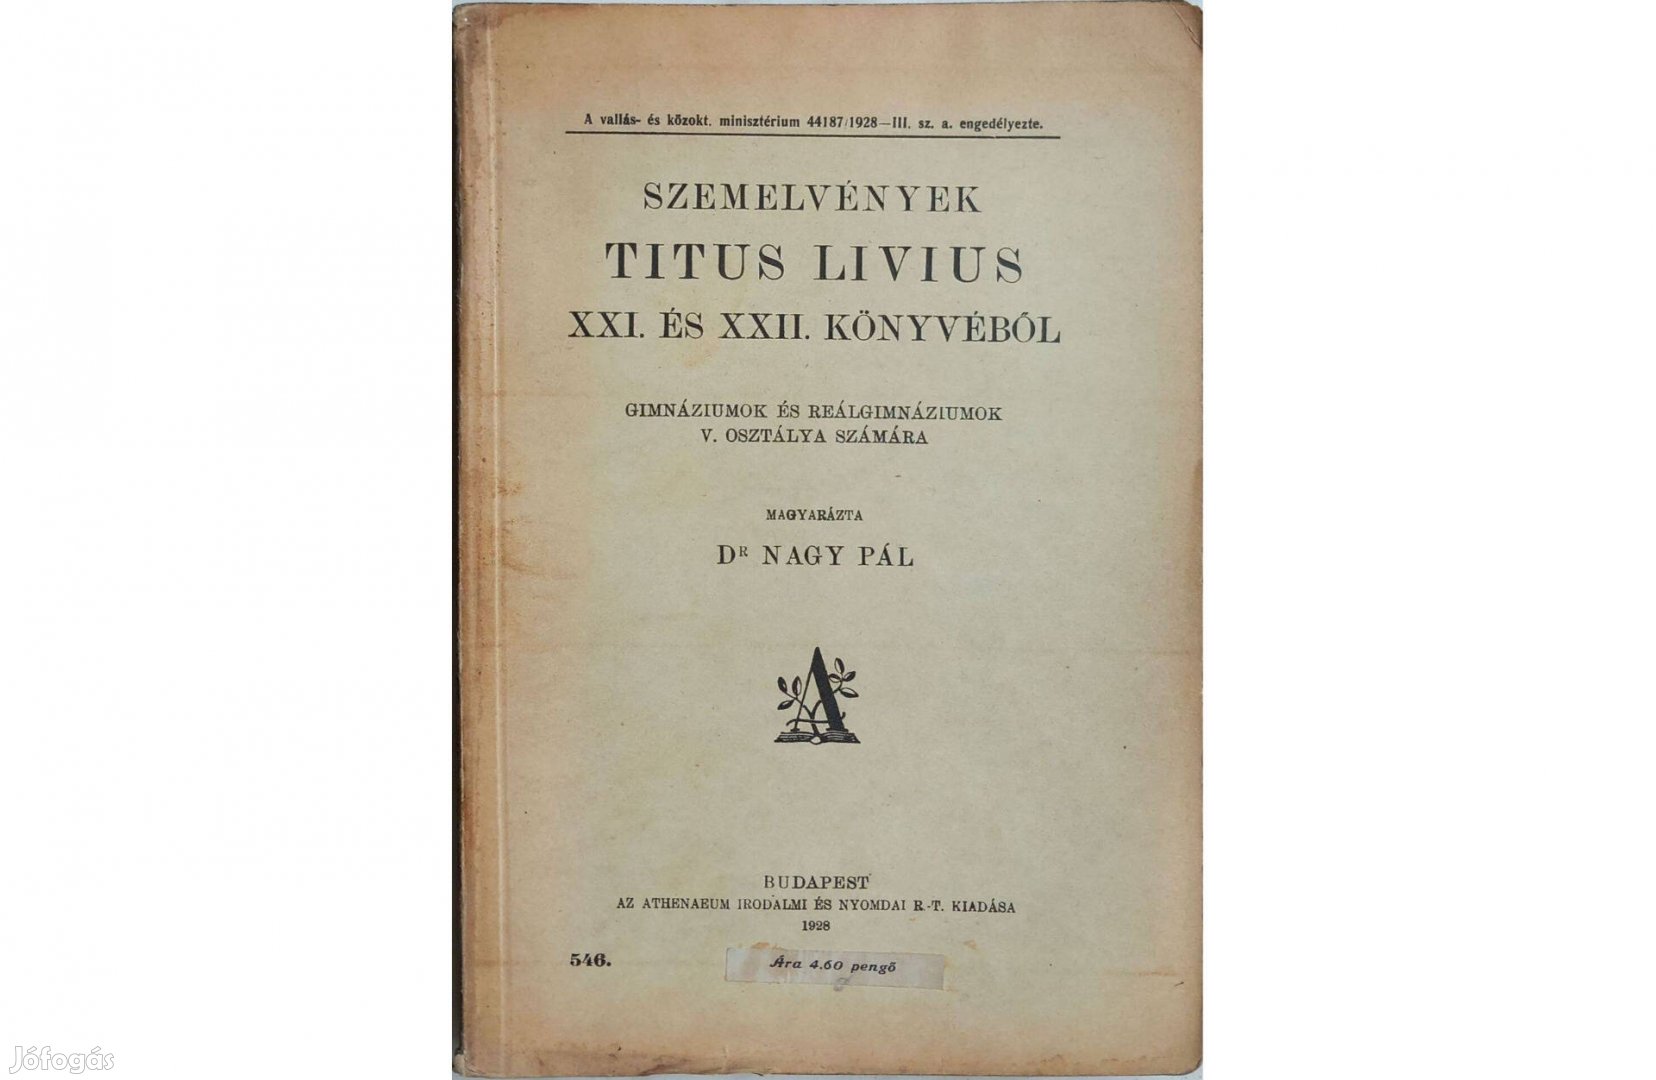 Szemelvények Titus Livius XXI. és XXII. könyvéből - 1928, latin